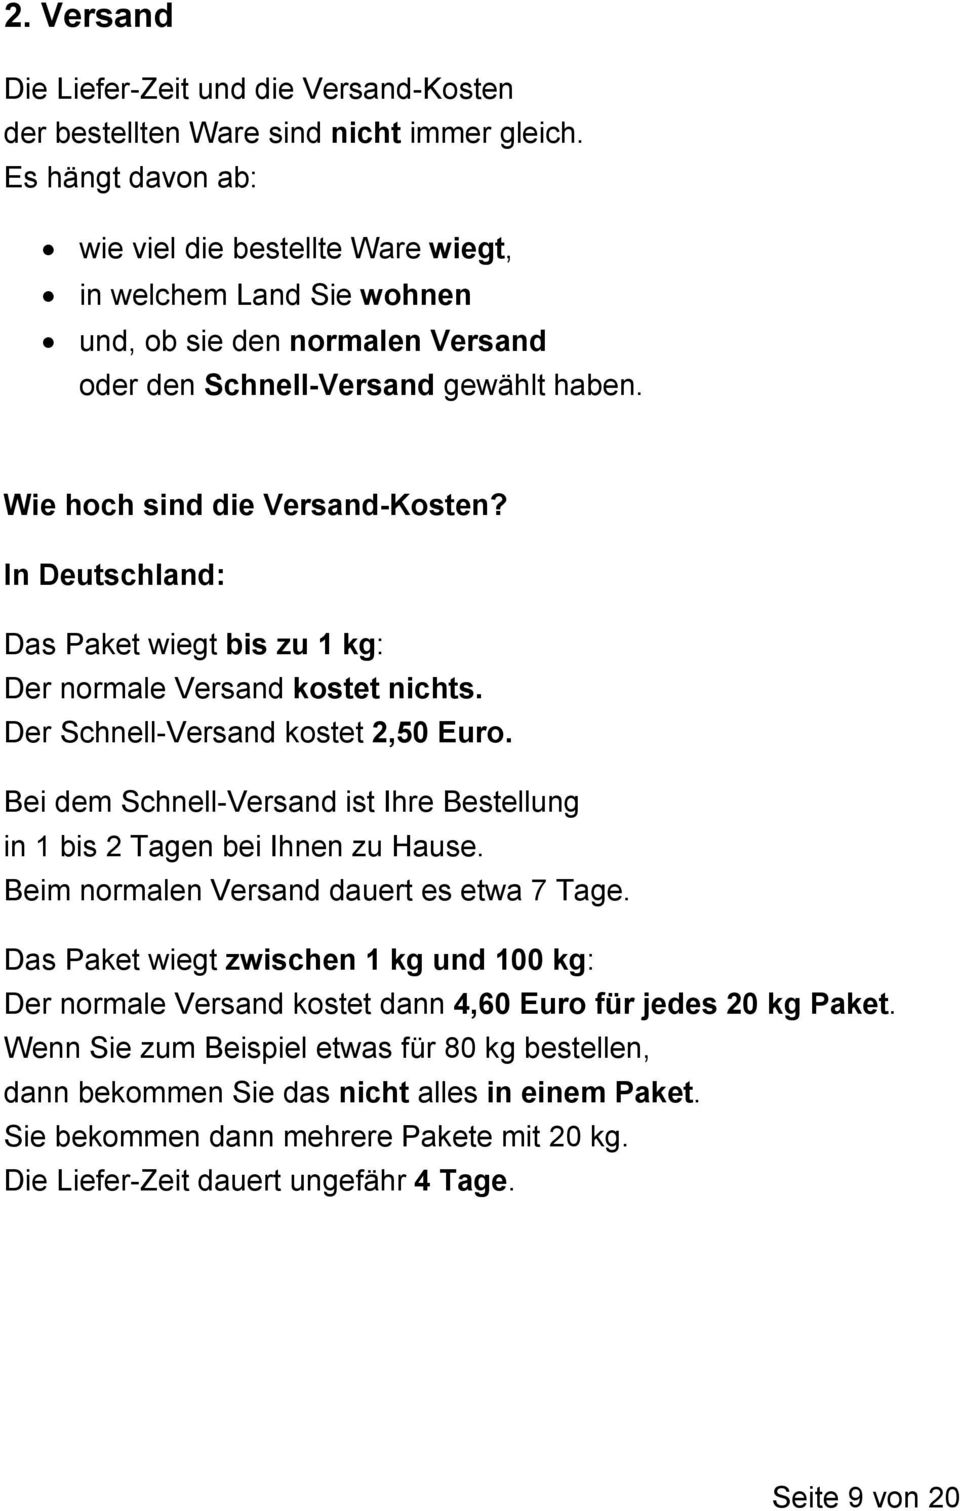 In Deutschland: Das Paket wiegt bis zu 1 kg: Der normale Versand kostet nichts. Der Schnell-Versand kostet 2,50 Euro. Bei dem Schnell-Versand ist Ihre Bestellung in 1 bis 2 Tagen bei Ihnen zu Hause.